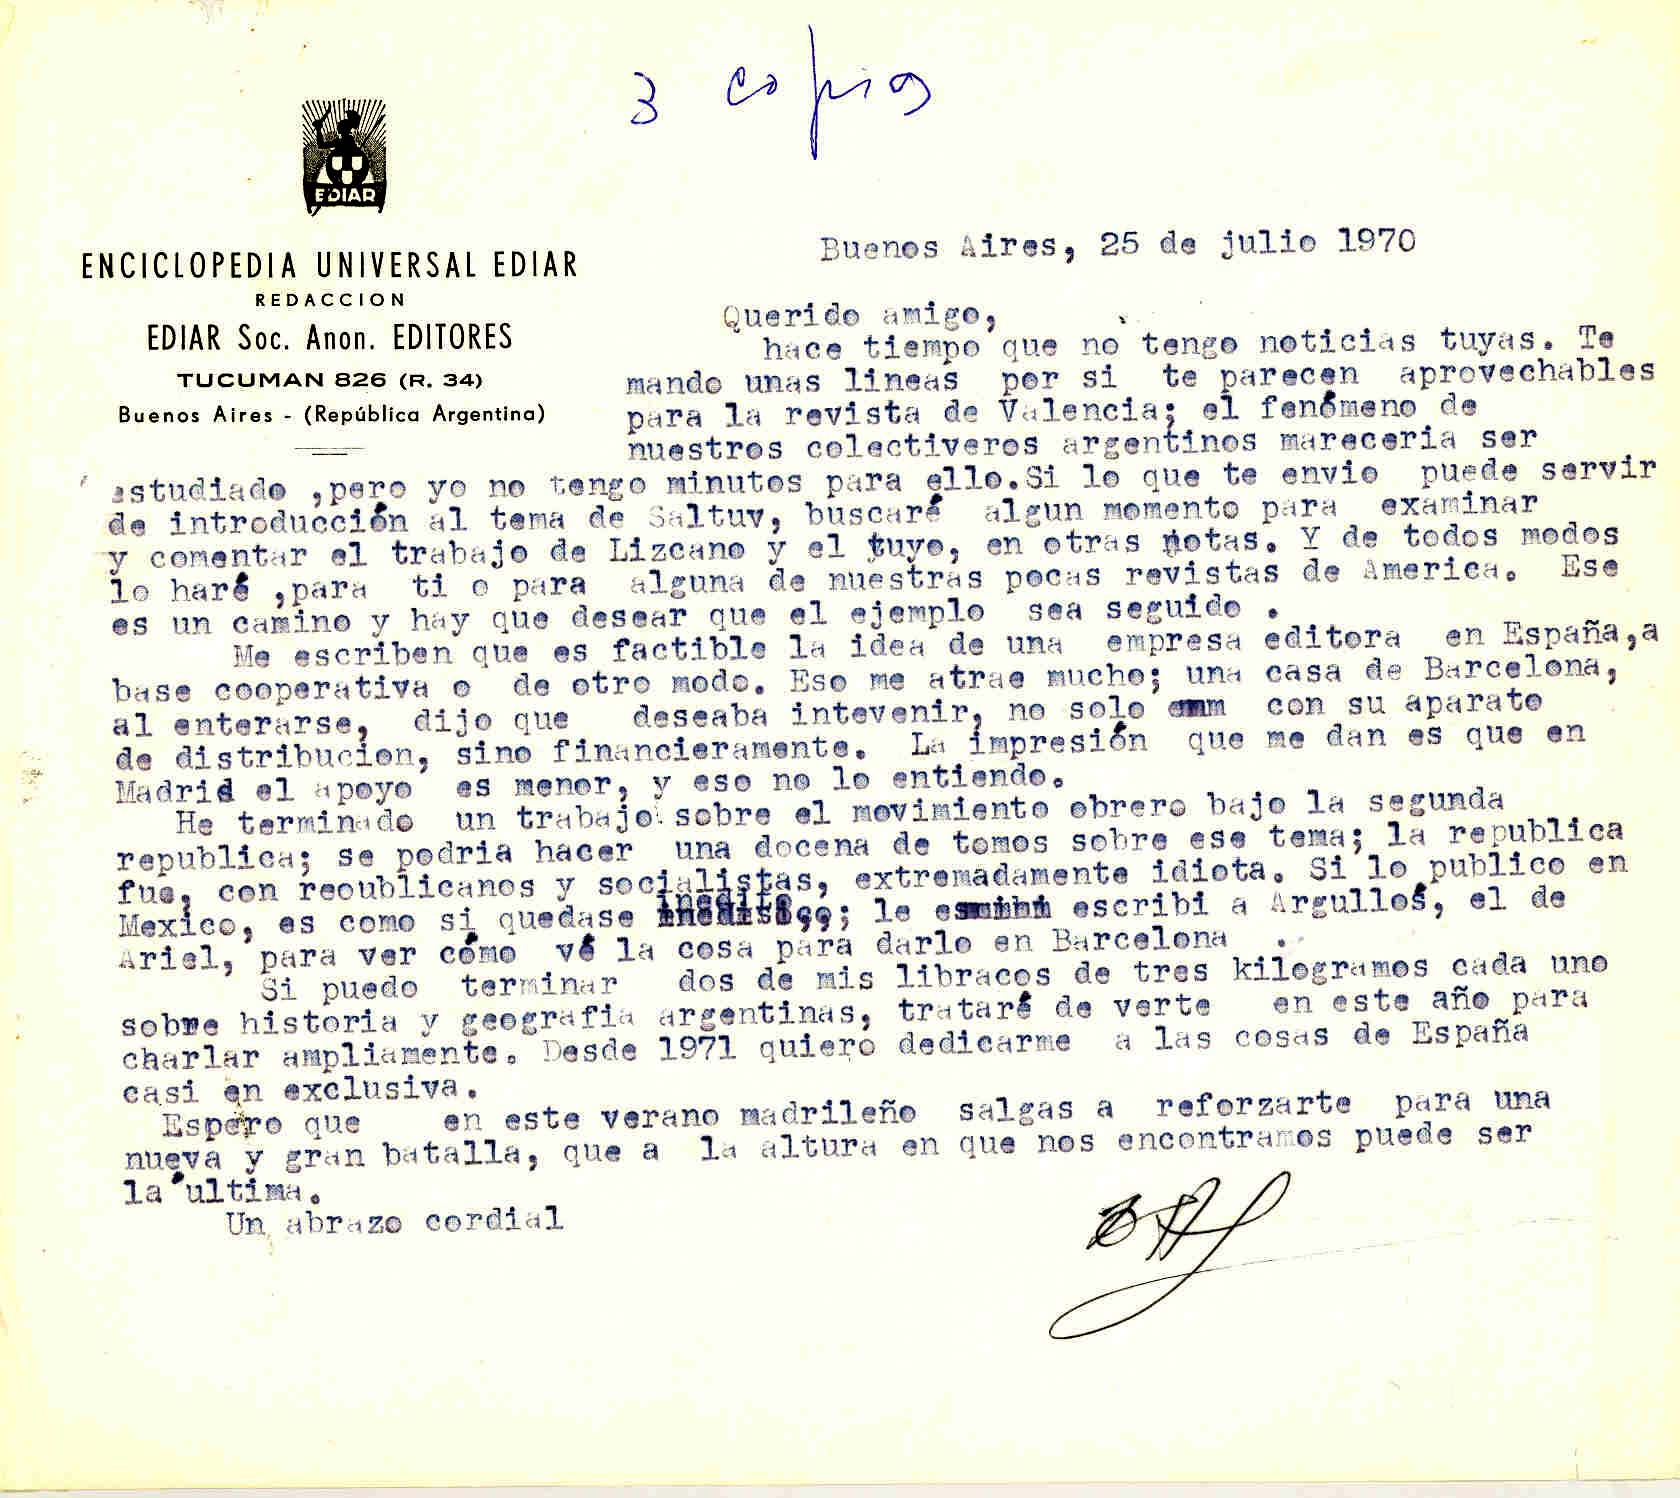 Carta de Diego Abad de Santillán informando que es factible la idea de la empresa editora en España y que ha terminado el trabajo del movimiento obrero bajo la Segunda República.